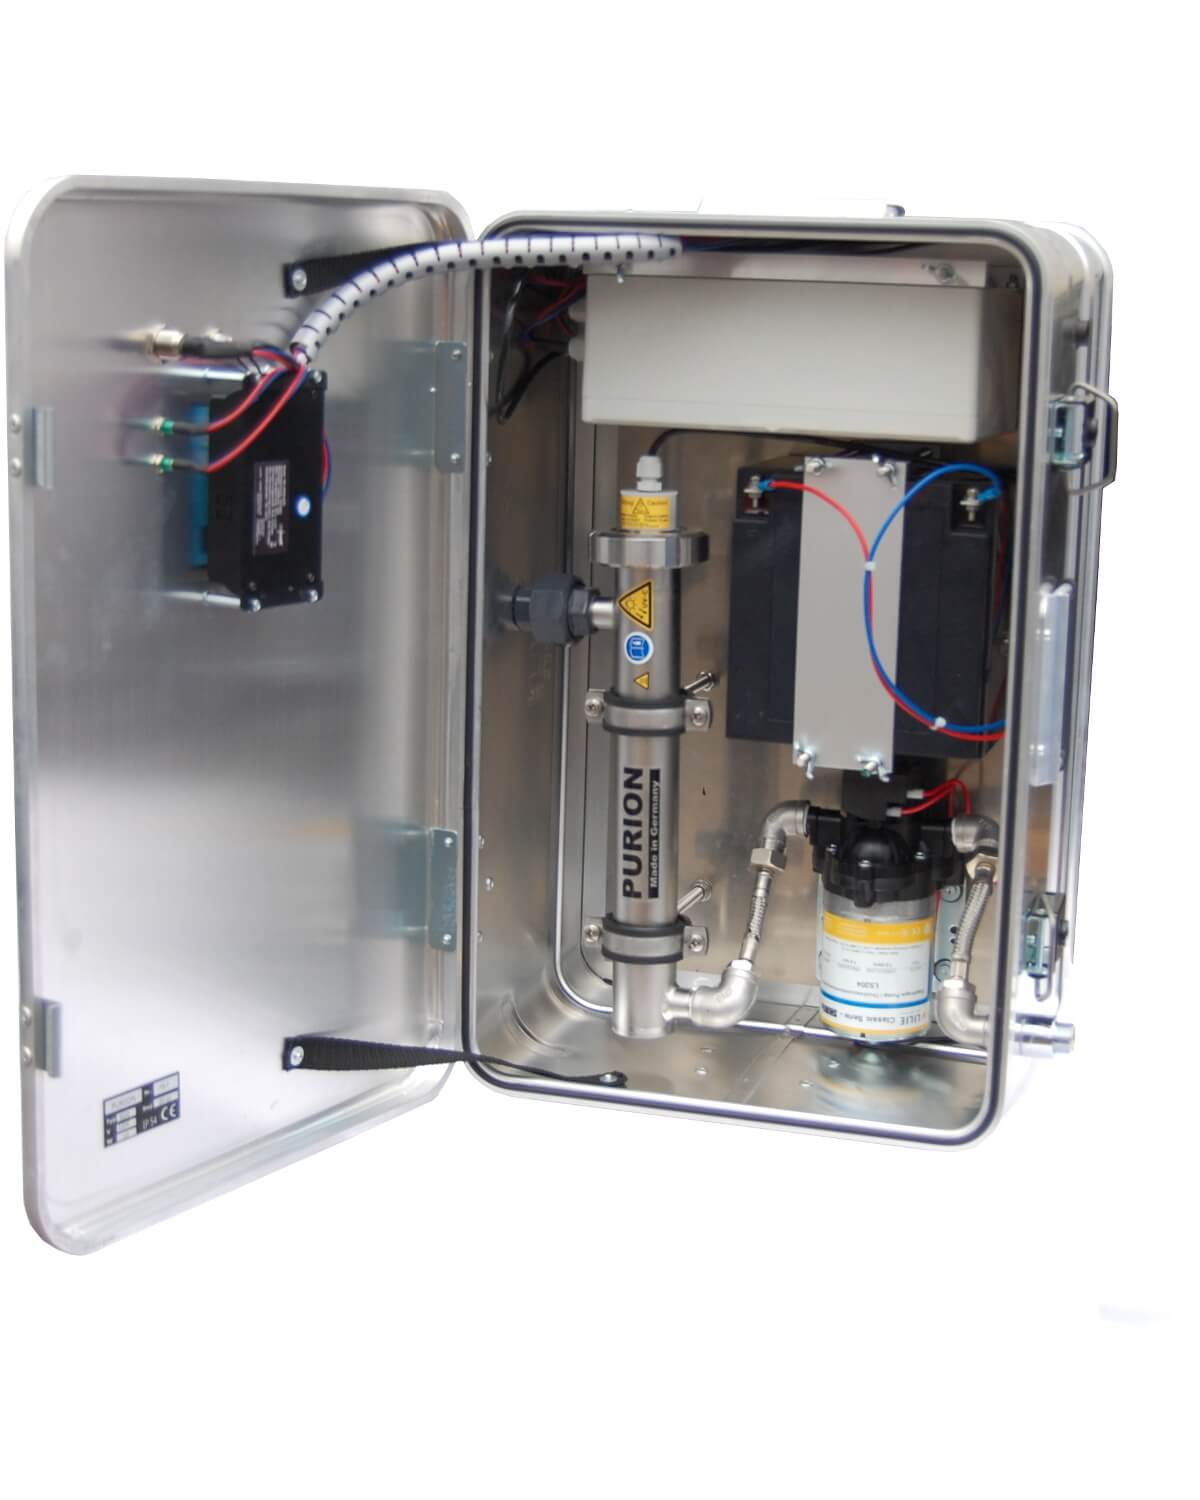 Eine PURION Tropenbox mit Wasserpumpe und UV-C-Desinfektionsanlage im Inneren. (Markenname: PURION GmbH)